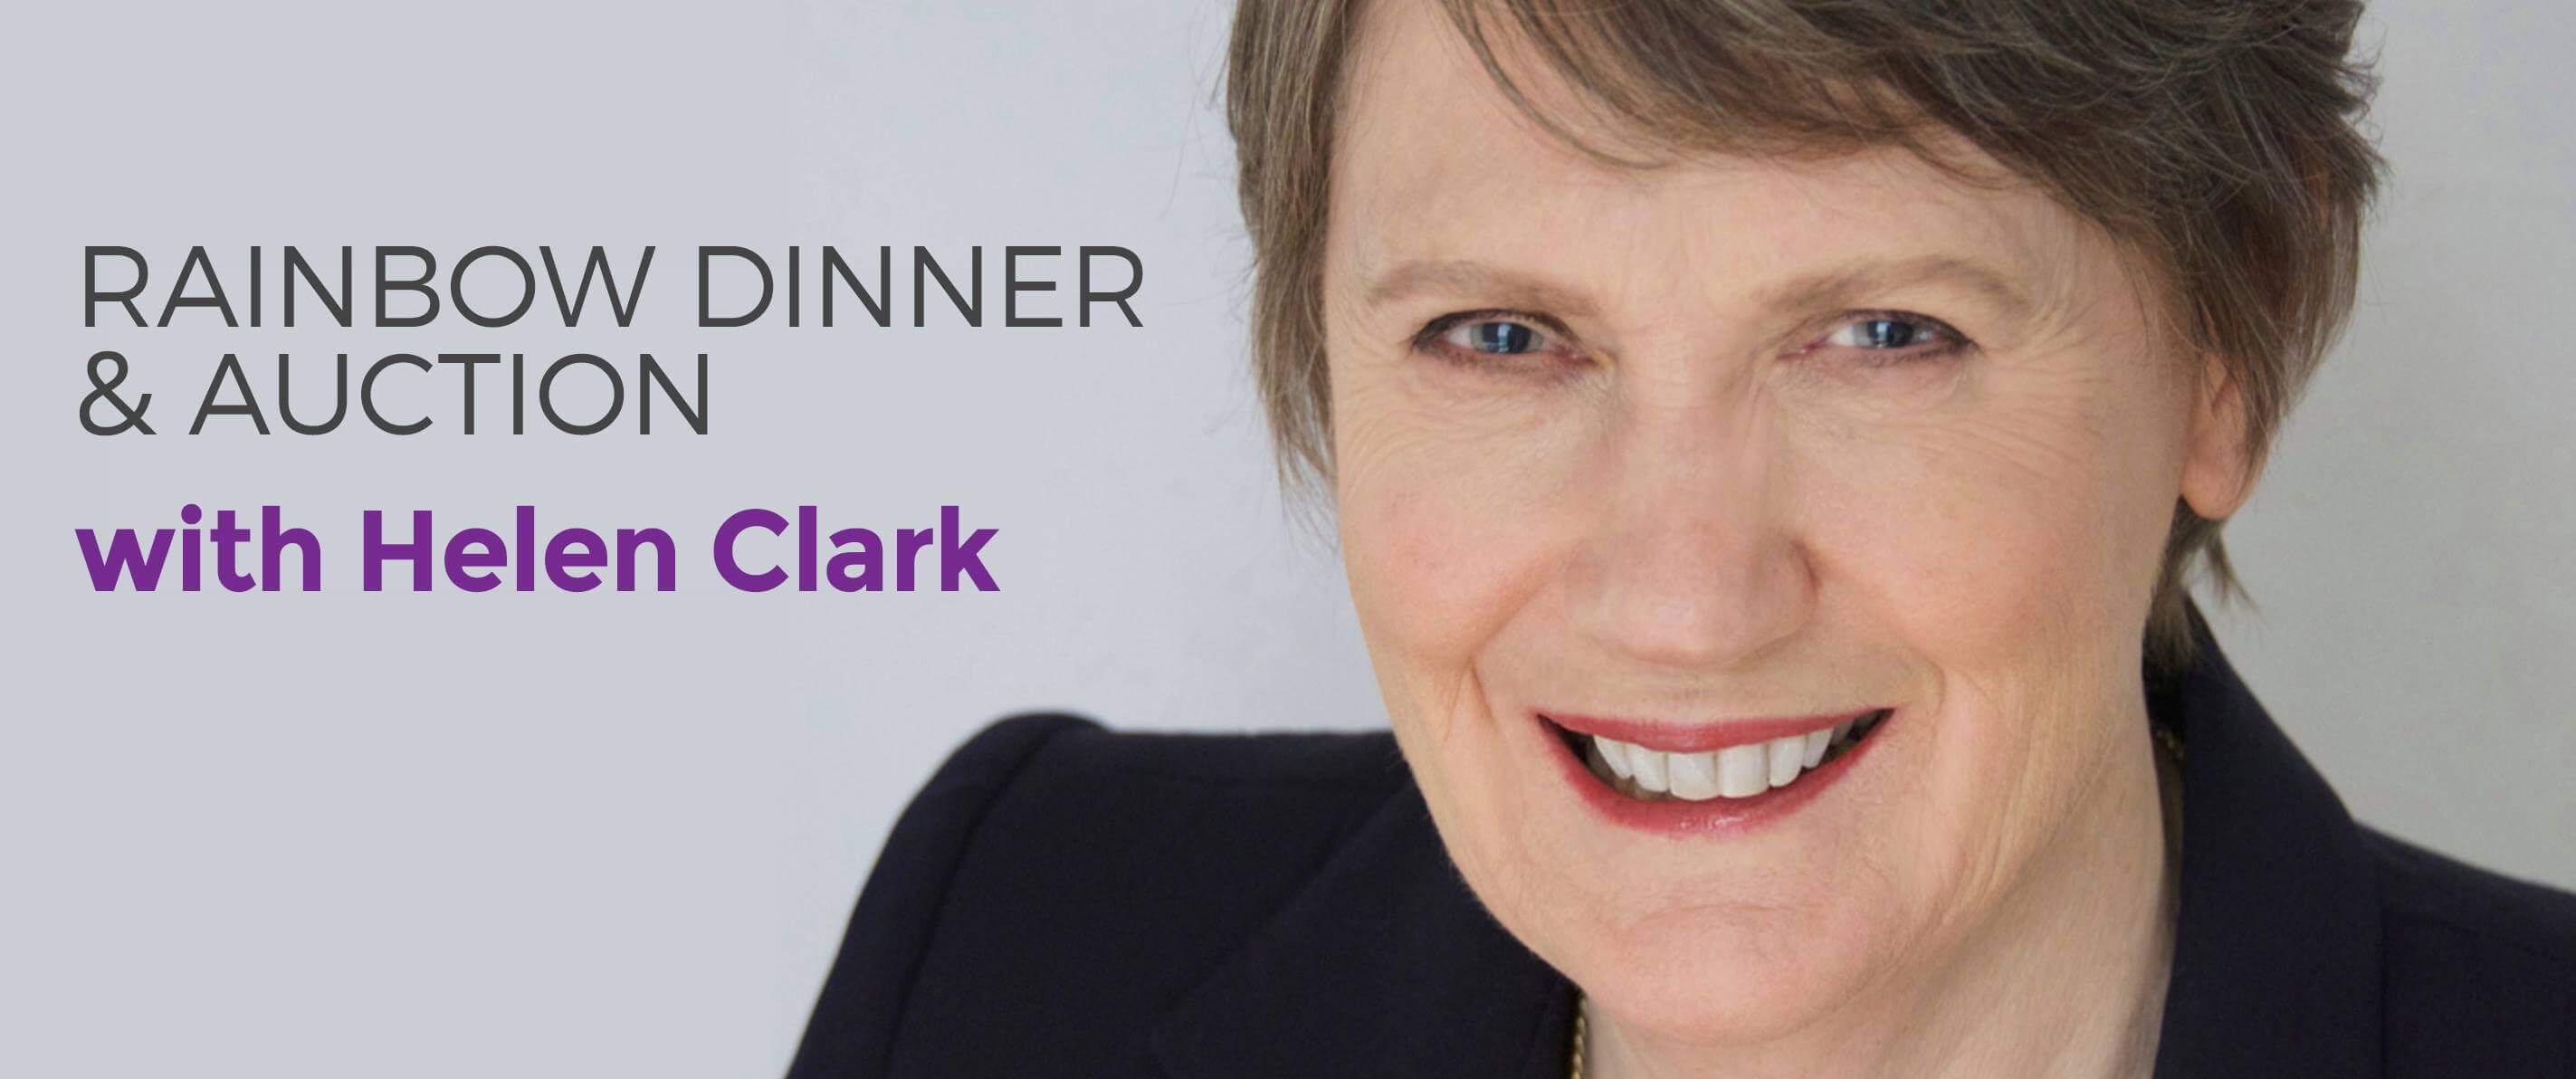 Rainbow Dinner and Auction with Helen Clark